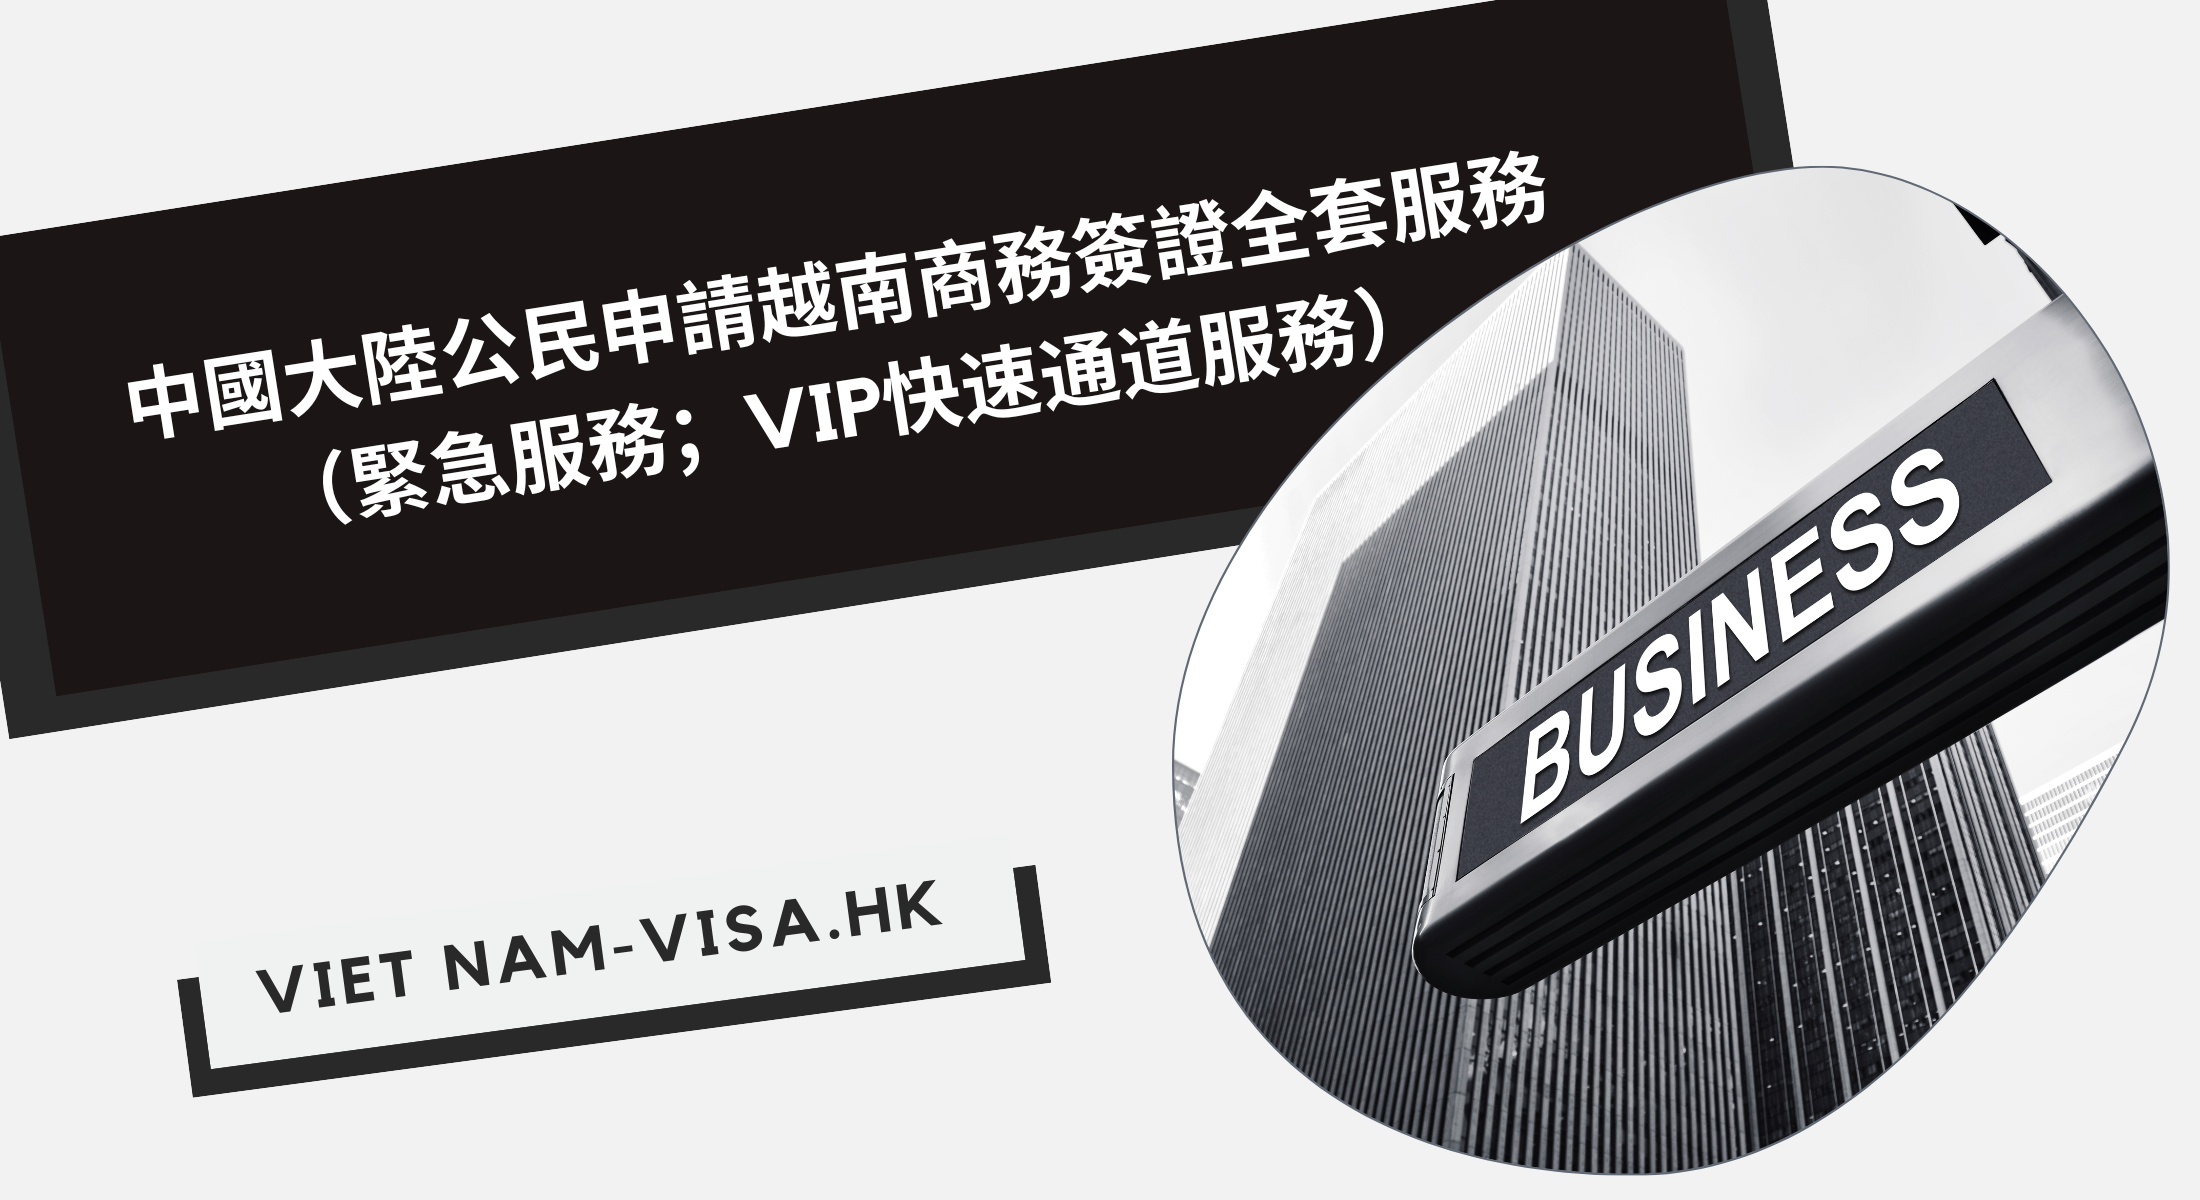 中國大陸公民申請越南商務簽證全套服務（緊急服務；VIP快速通道服務）